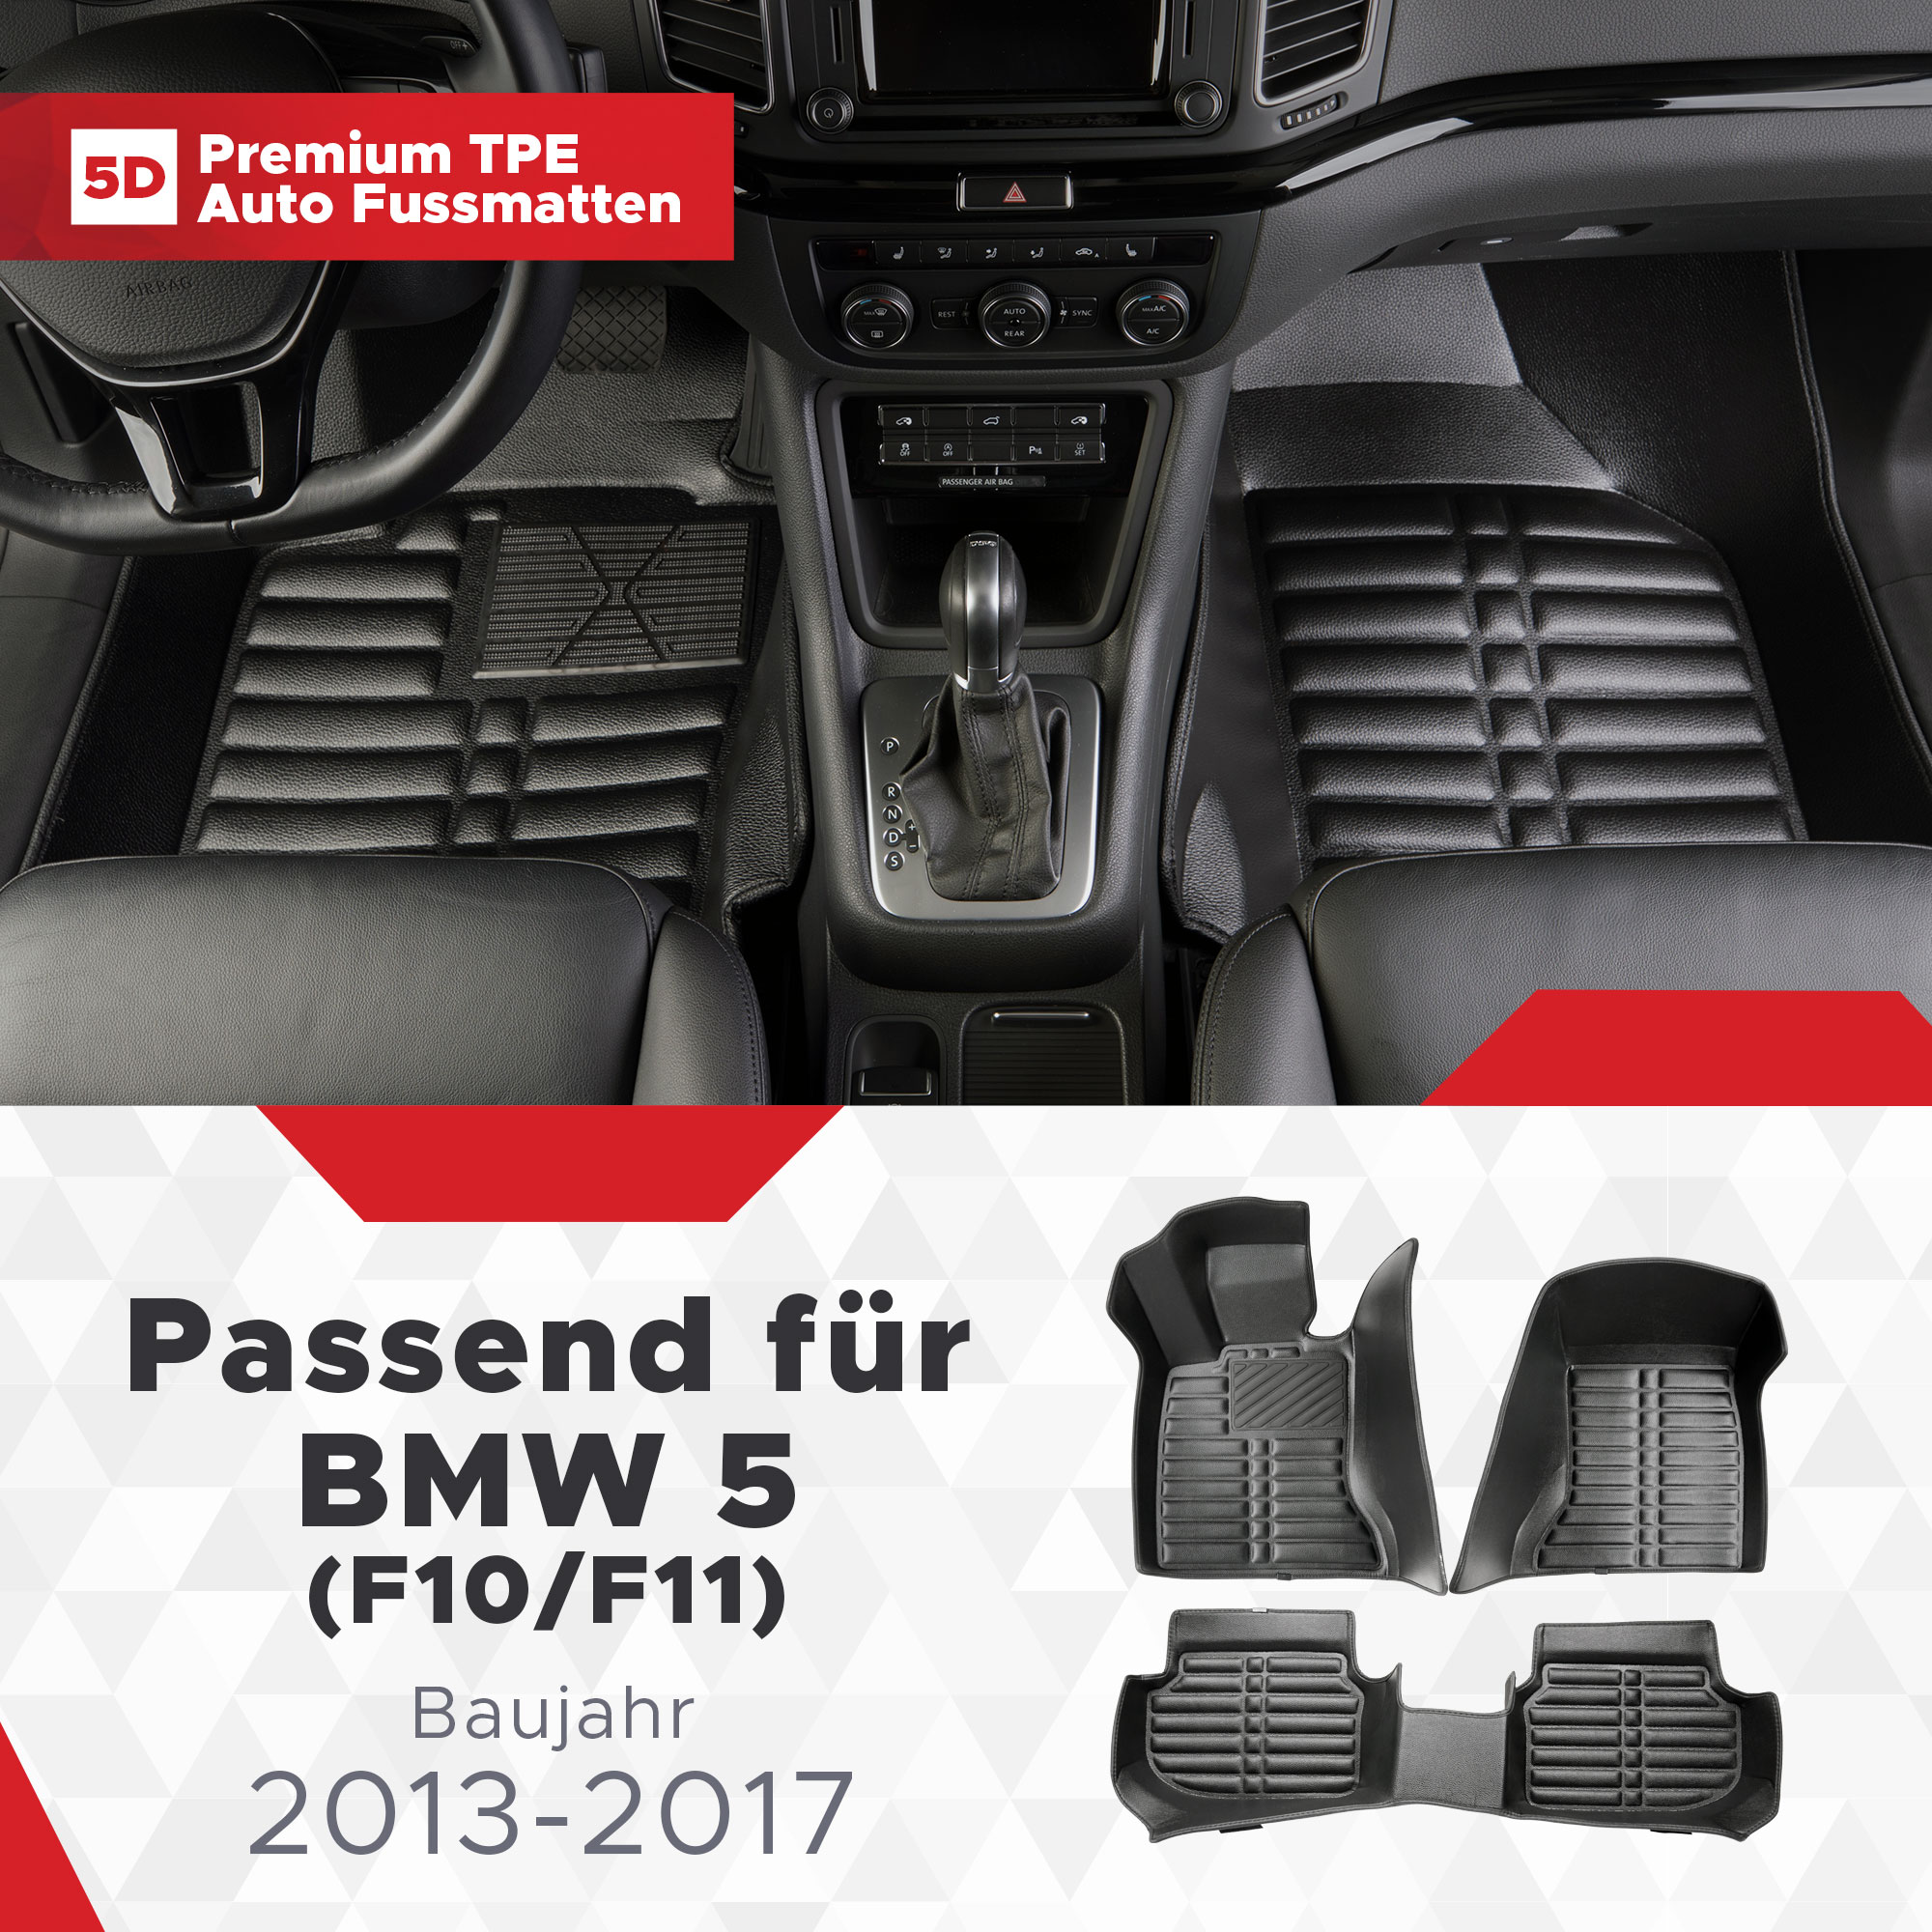 5 (F10/F11) BMW TPE 2013-2017 5D Bj Fussmatten